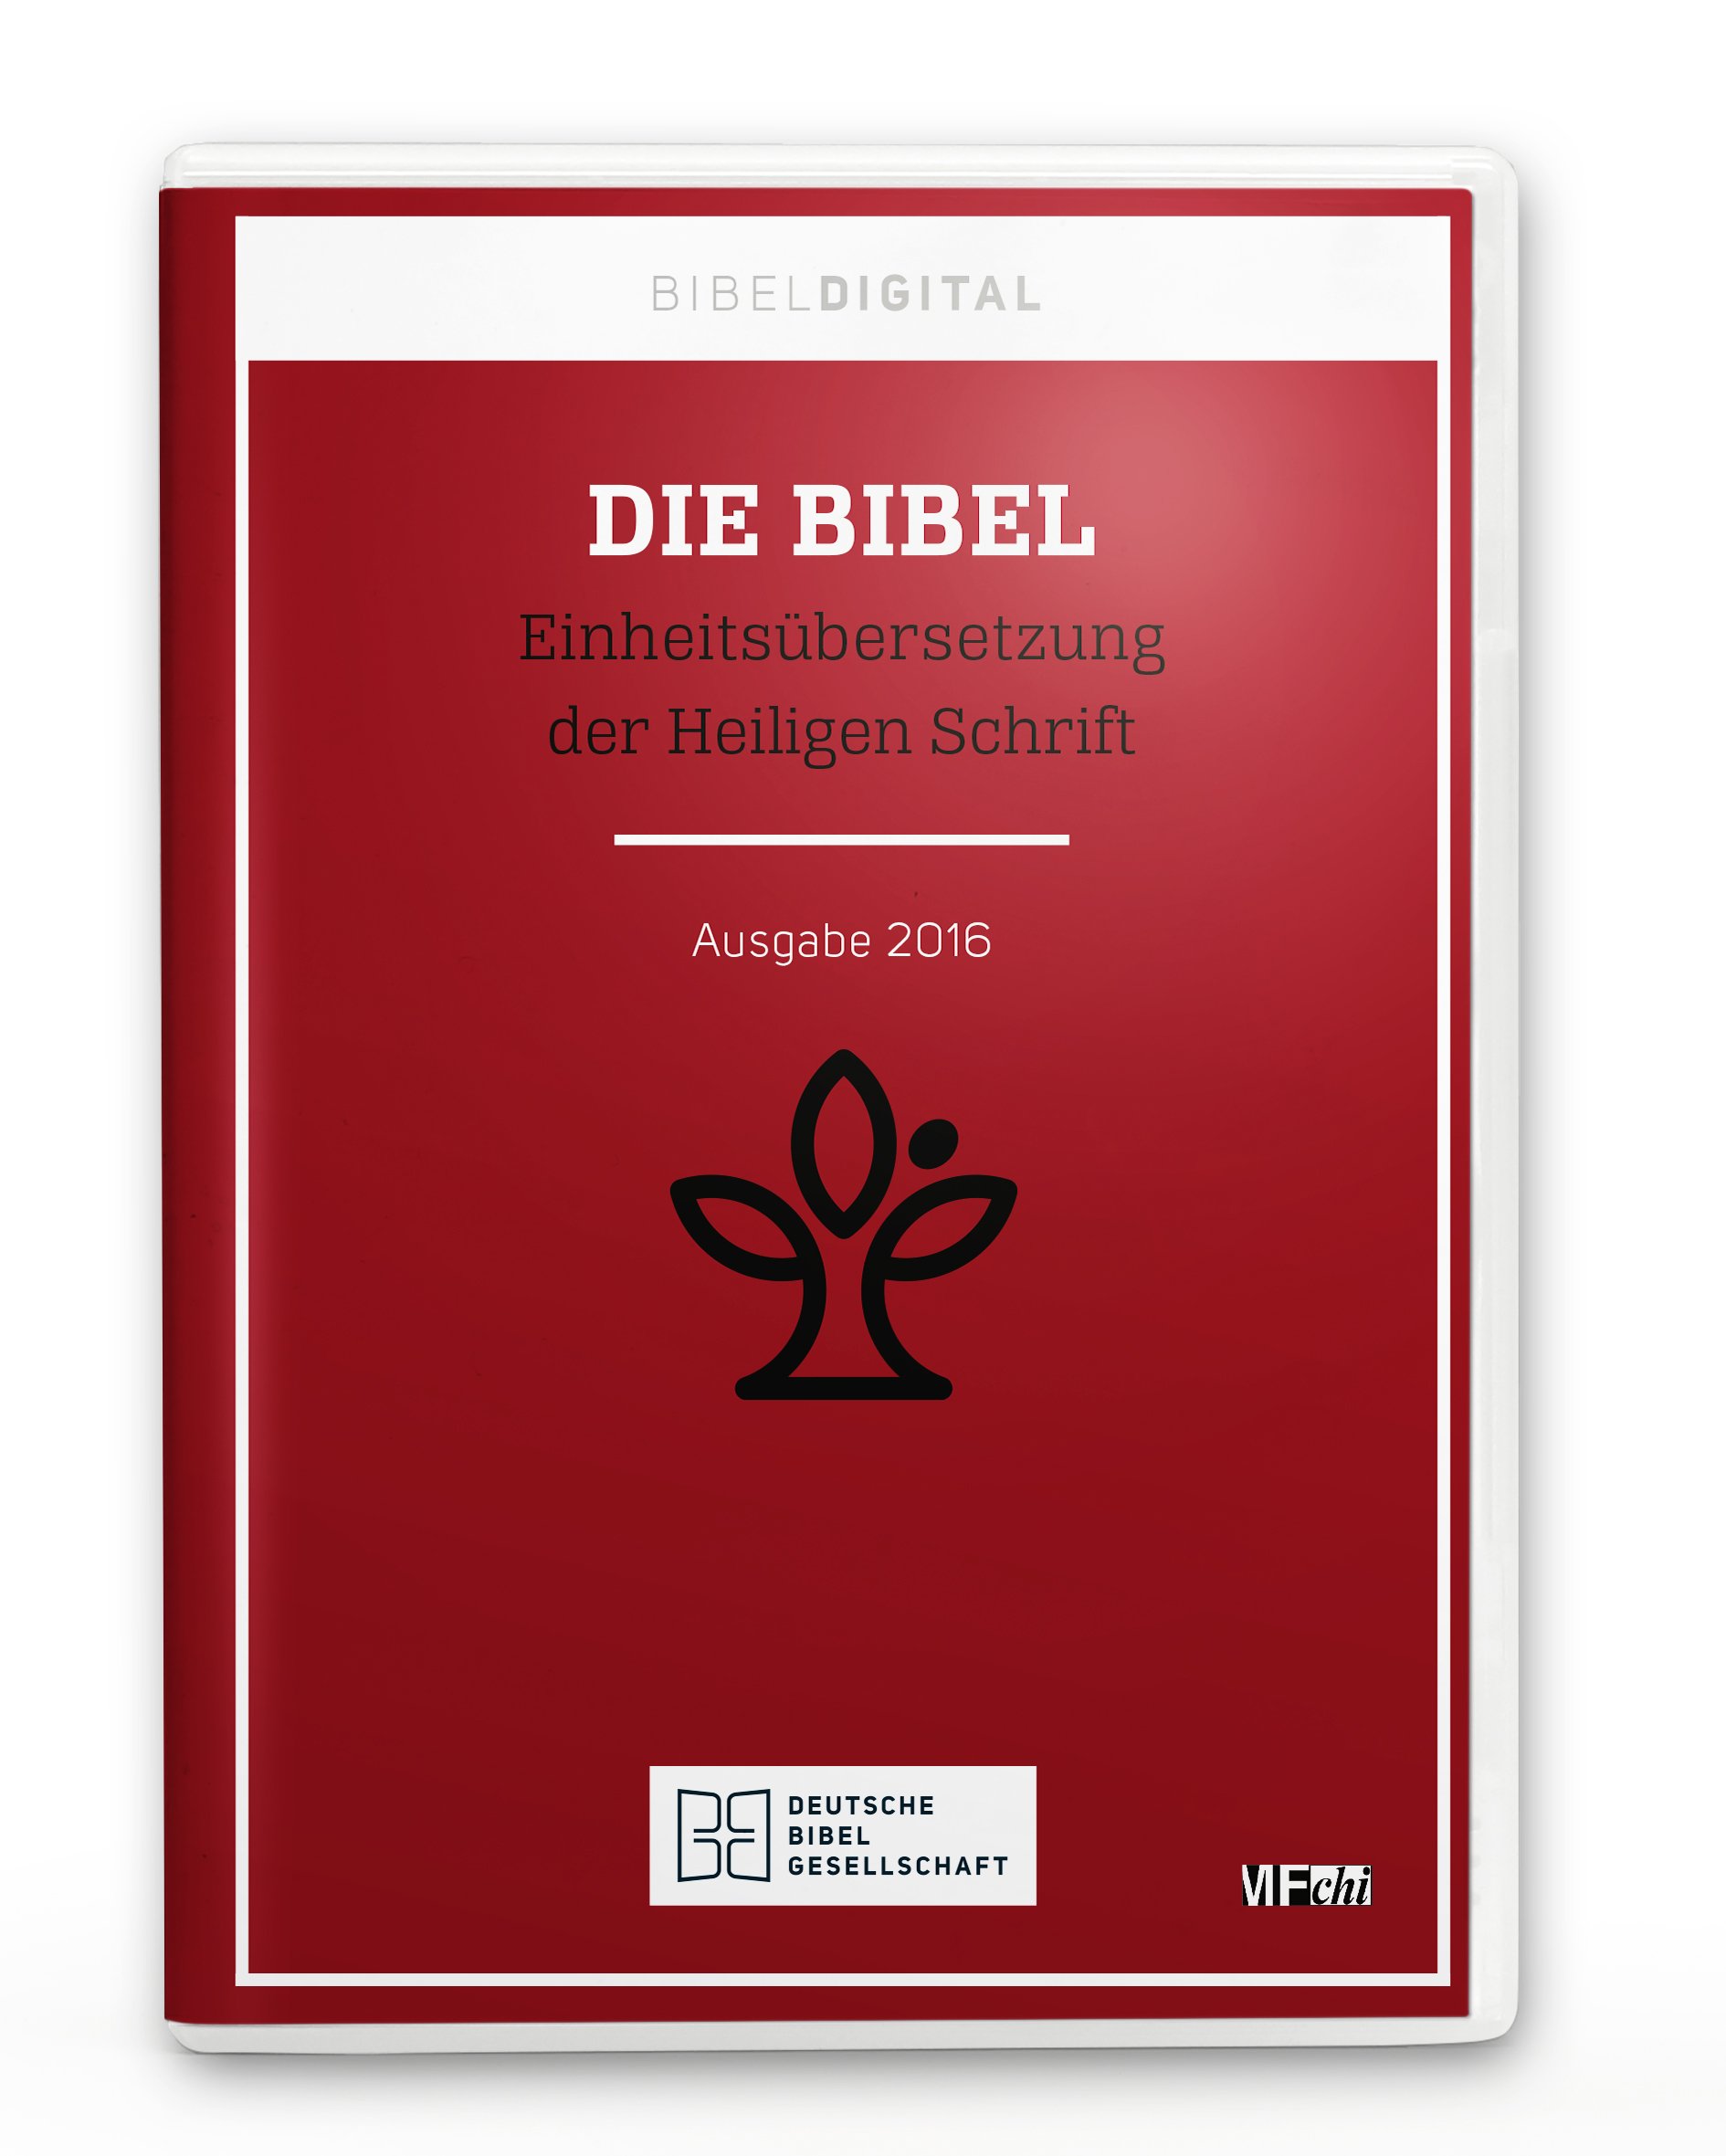 BIBELDIGITAL - Einheitsübersetzung der Heiligen Schrift - Cover